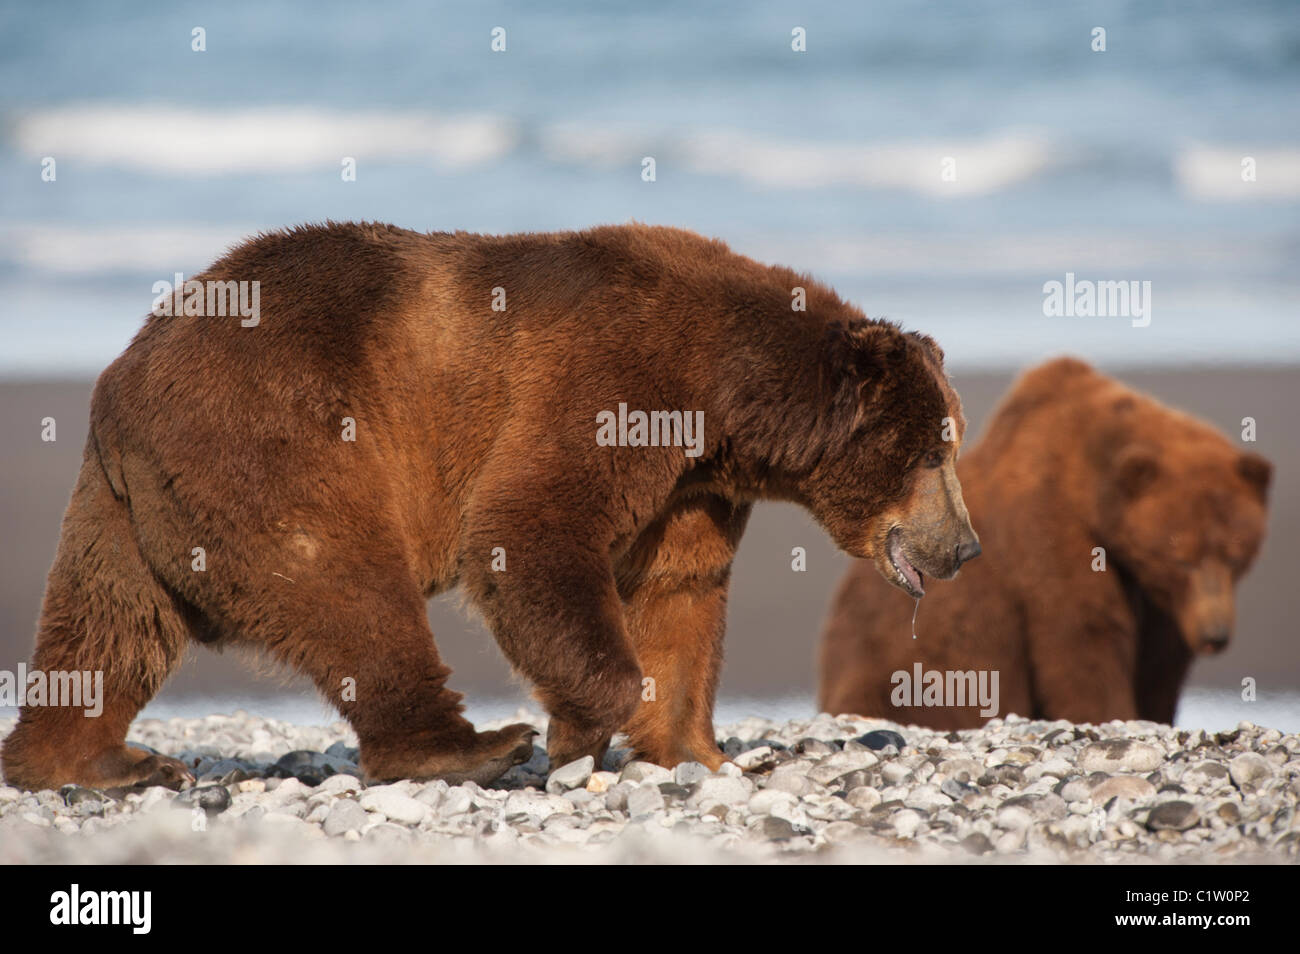 Kodiak brown bears (Ursus arctos middendorffi) at a coast, Swikshak, Katami Coast, Alaska, USA Stock Photo